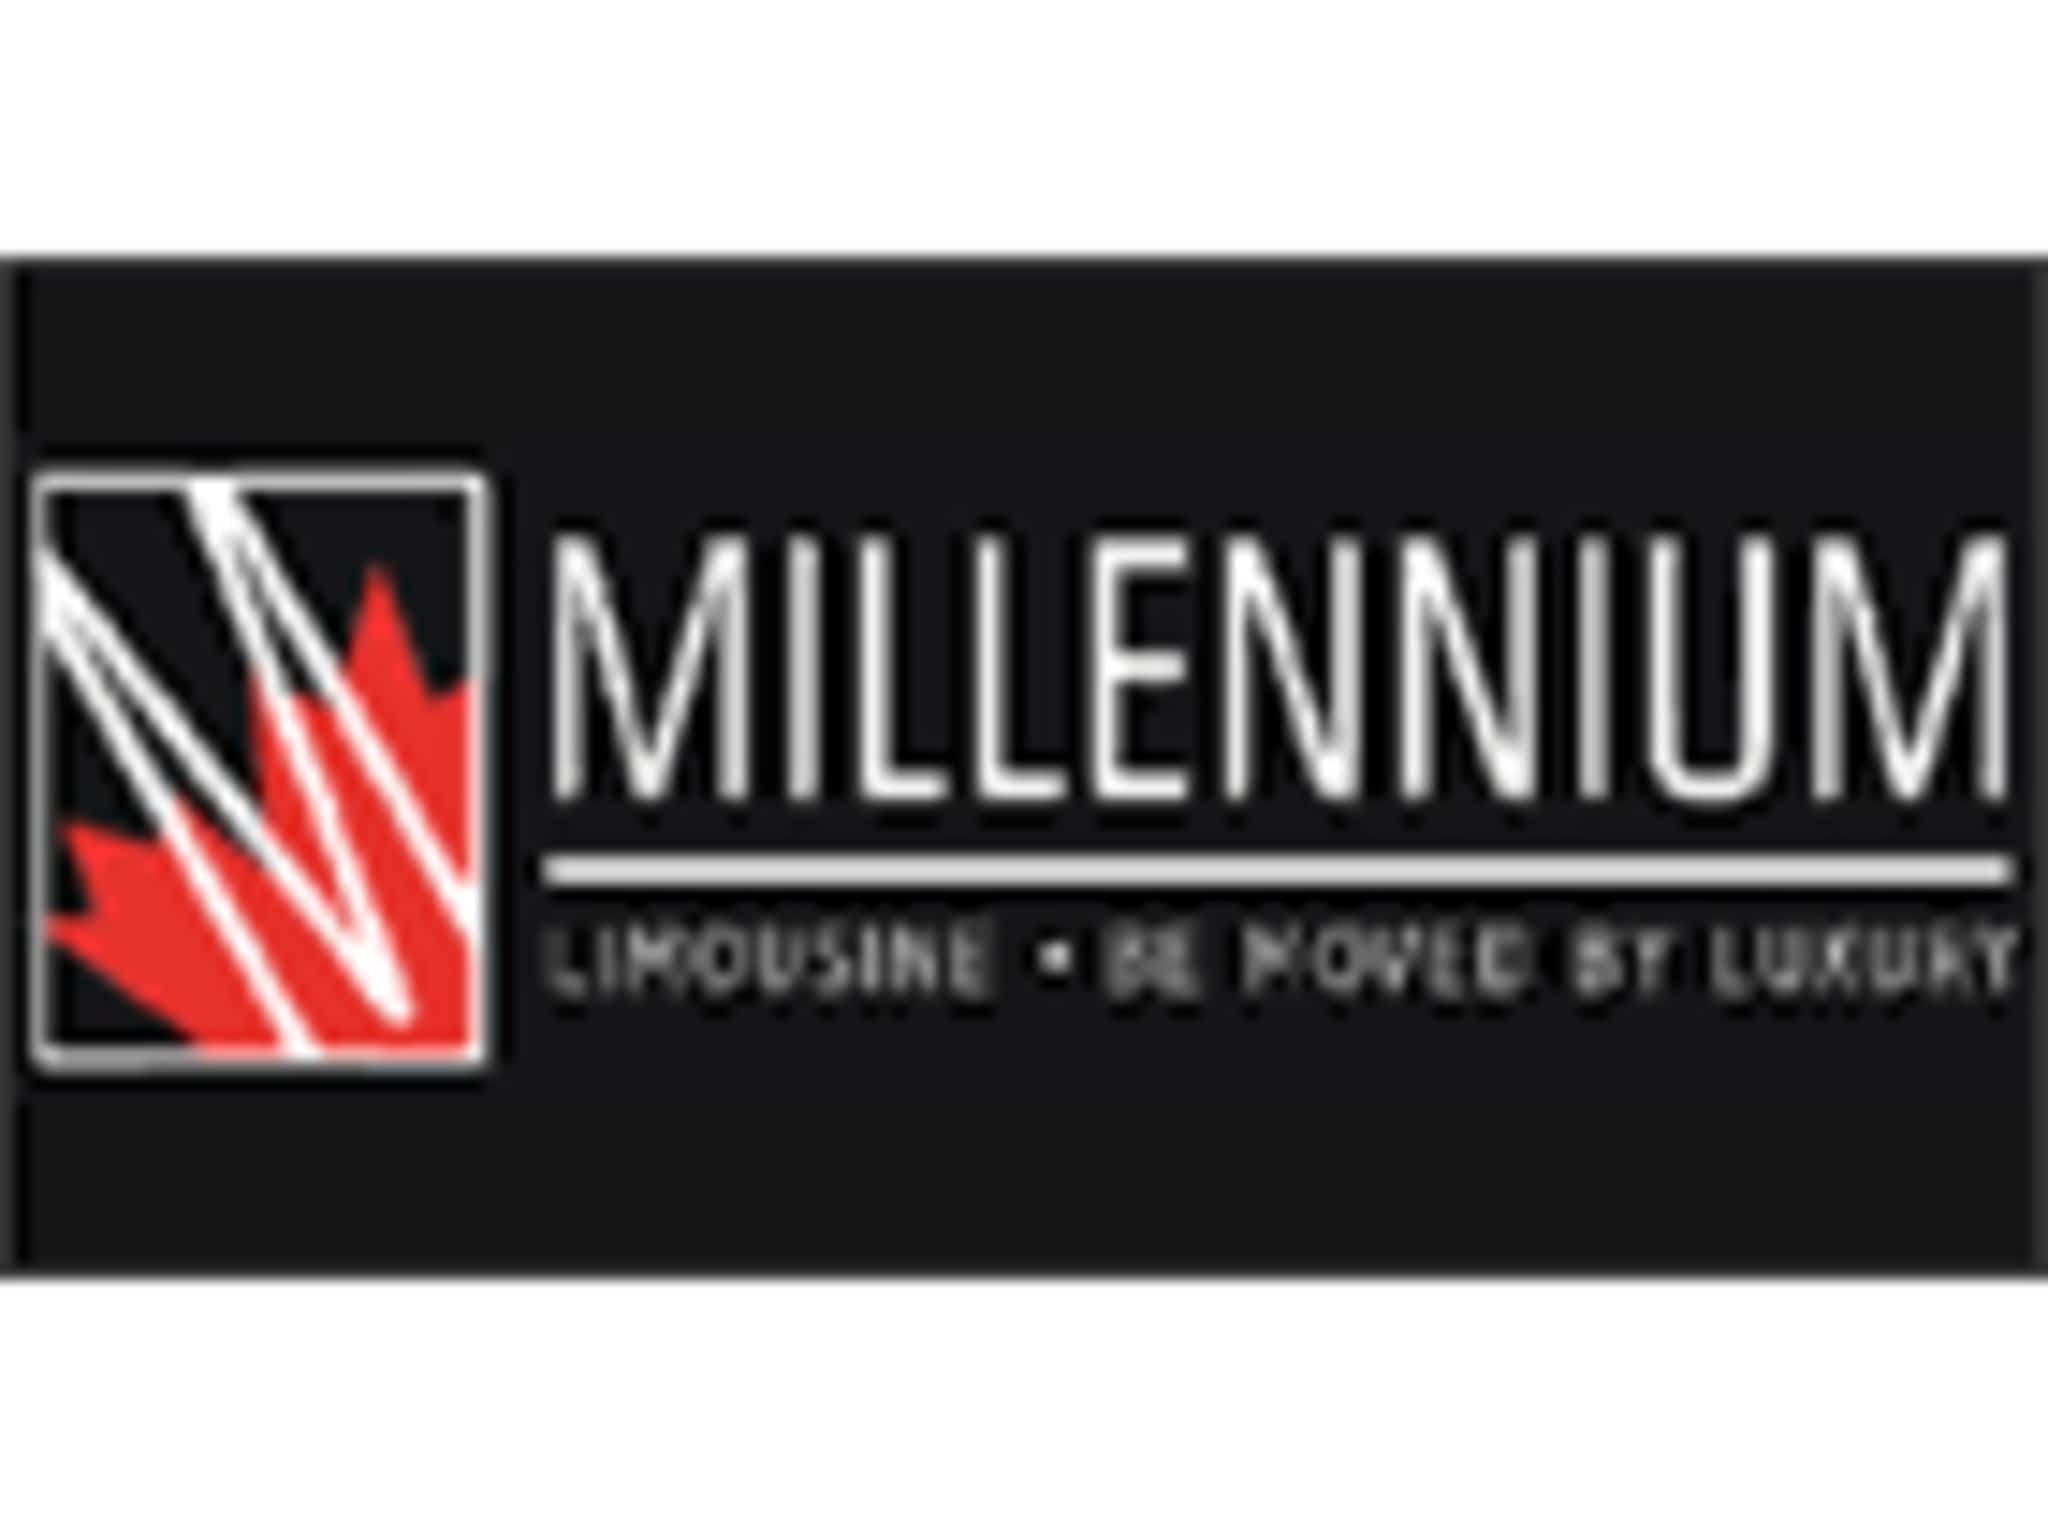 photo Millennium Limousine Services